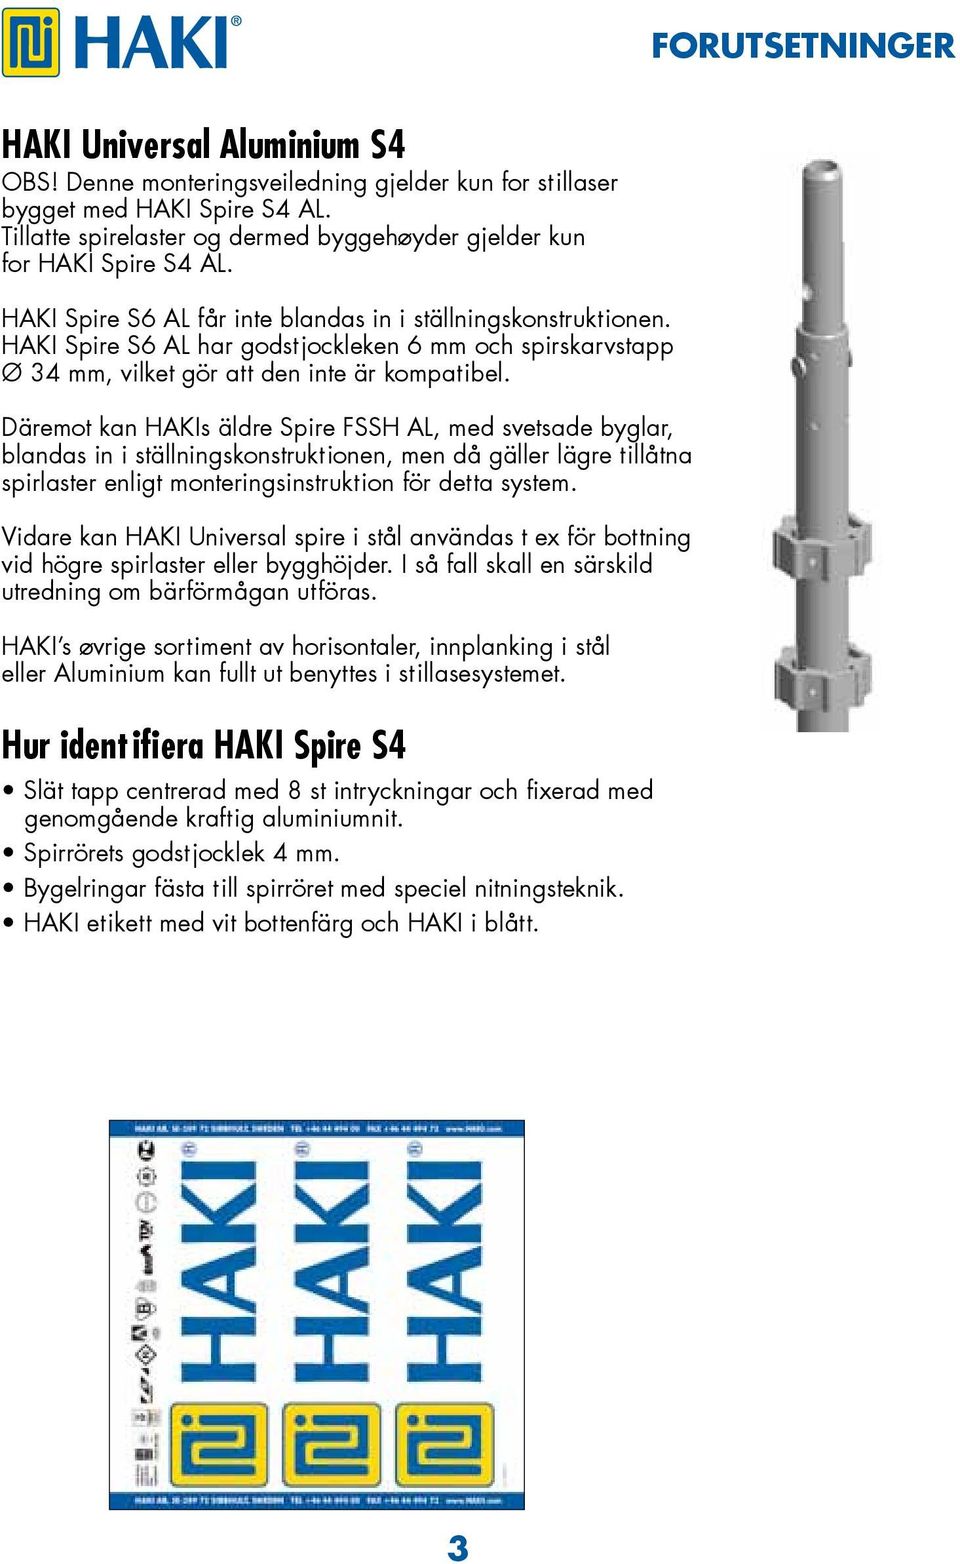 HAKI Spire S6 AL har godstjockleken 6 mm och spirskarvstapp Ø 34 mm, vilket gör att den inte är kompatibel.